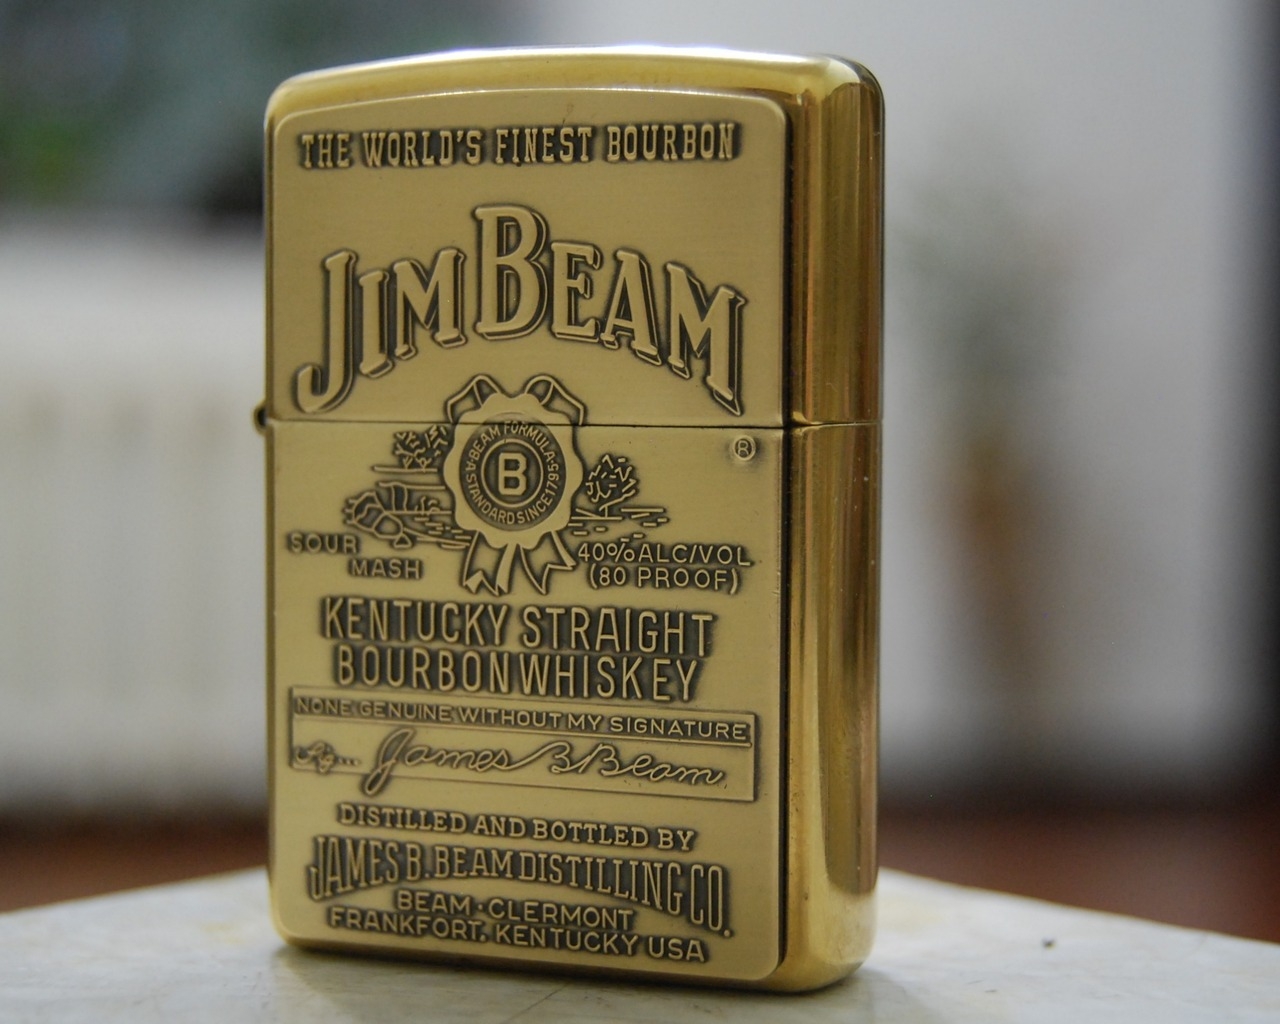 Jim Beam Zippo Lighter for 1280 x 1024 resolution